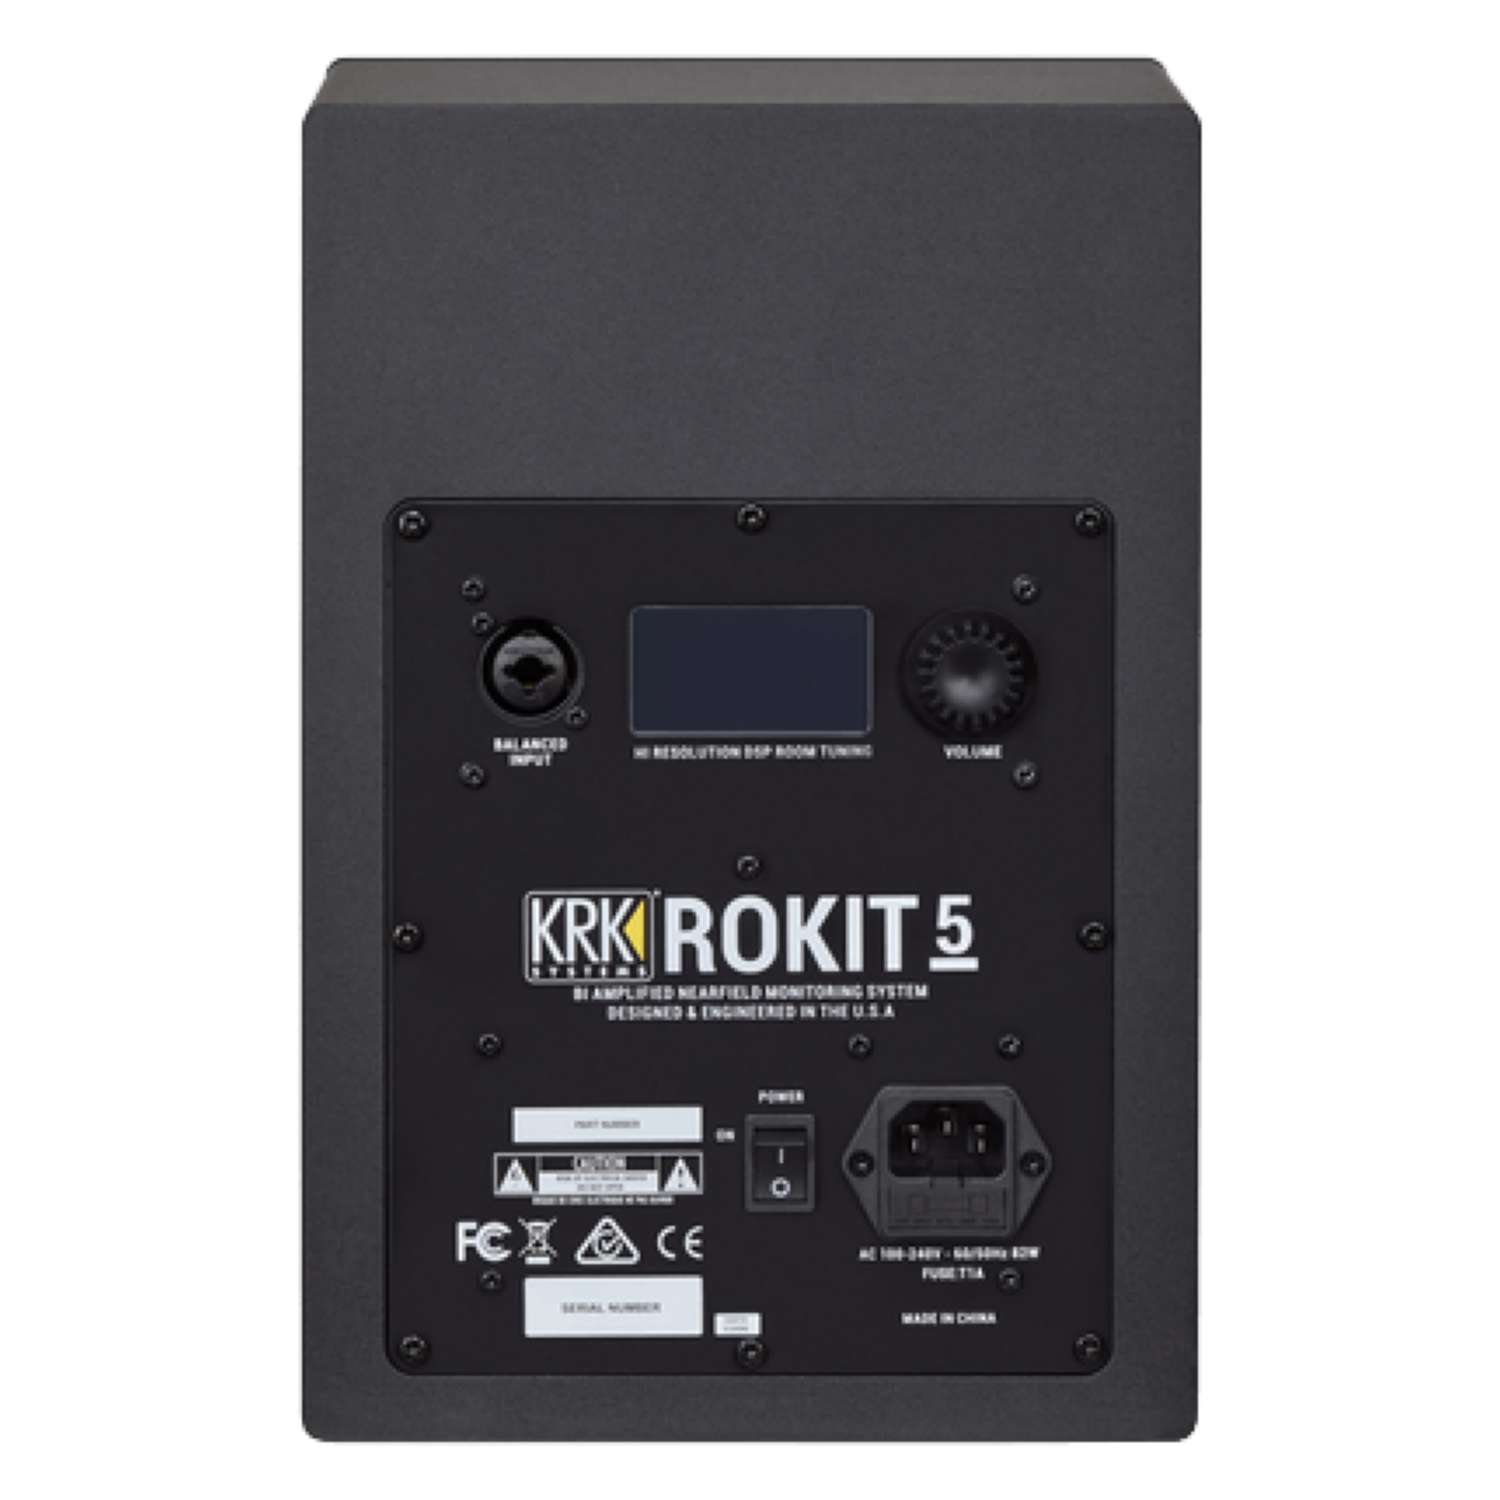 brand new krk rokit 5g4 studio monitor